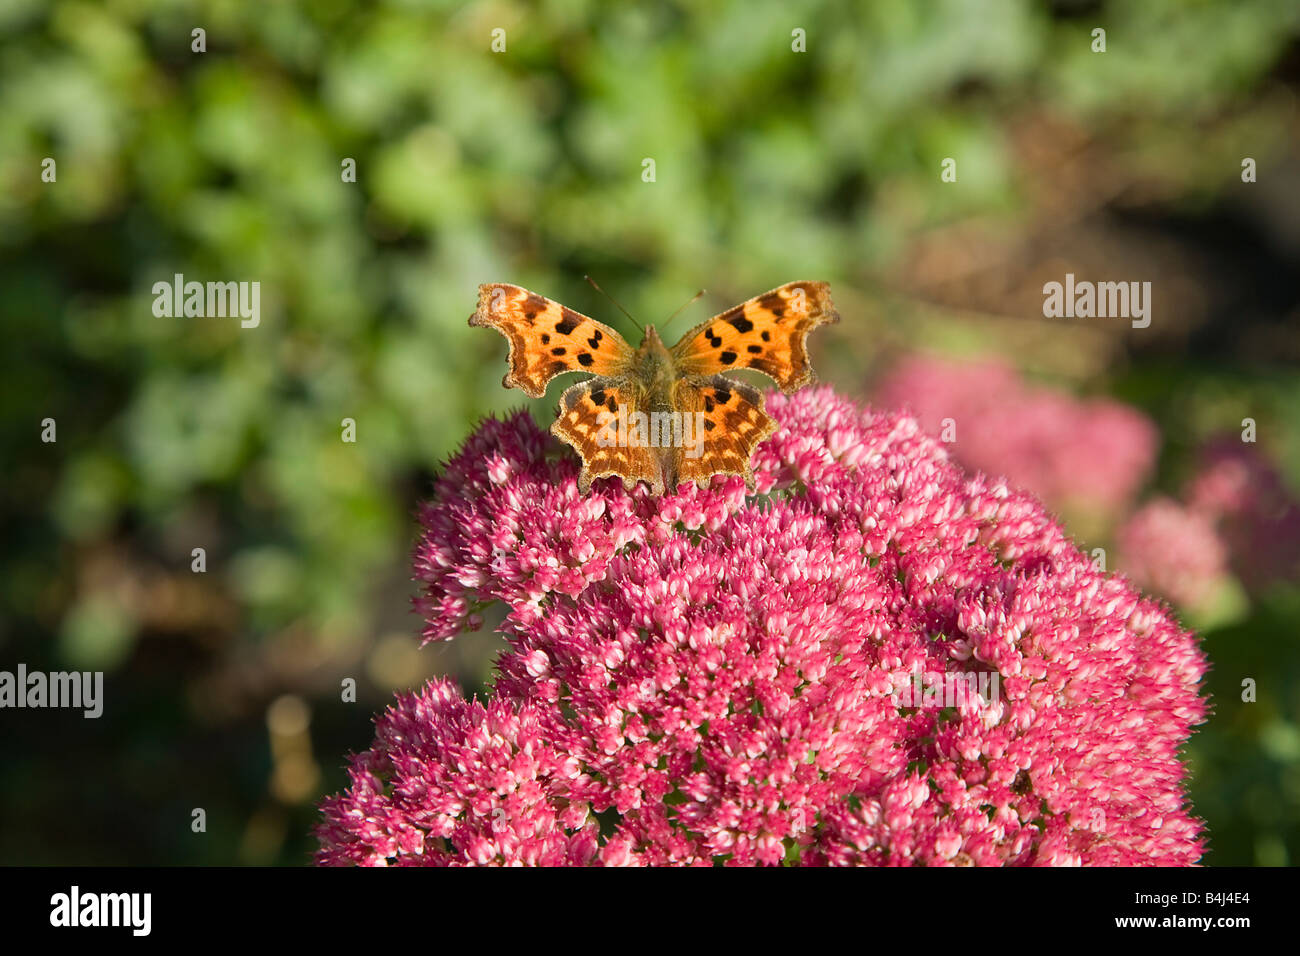 Coma mariposa sobre Sedum flor Foto de stock